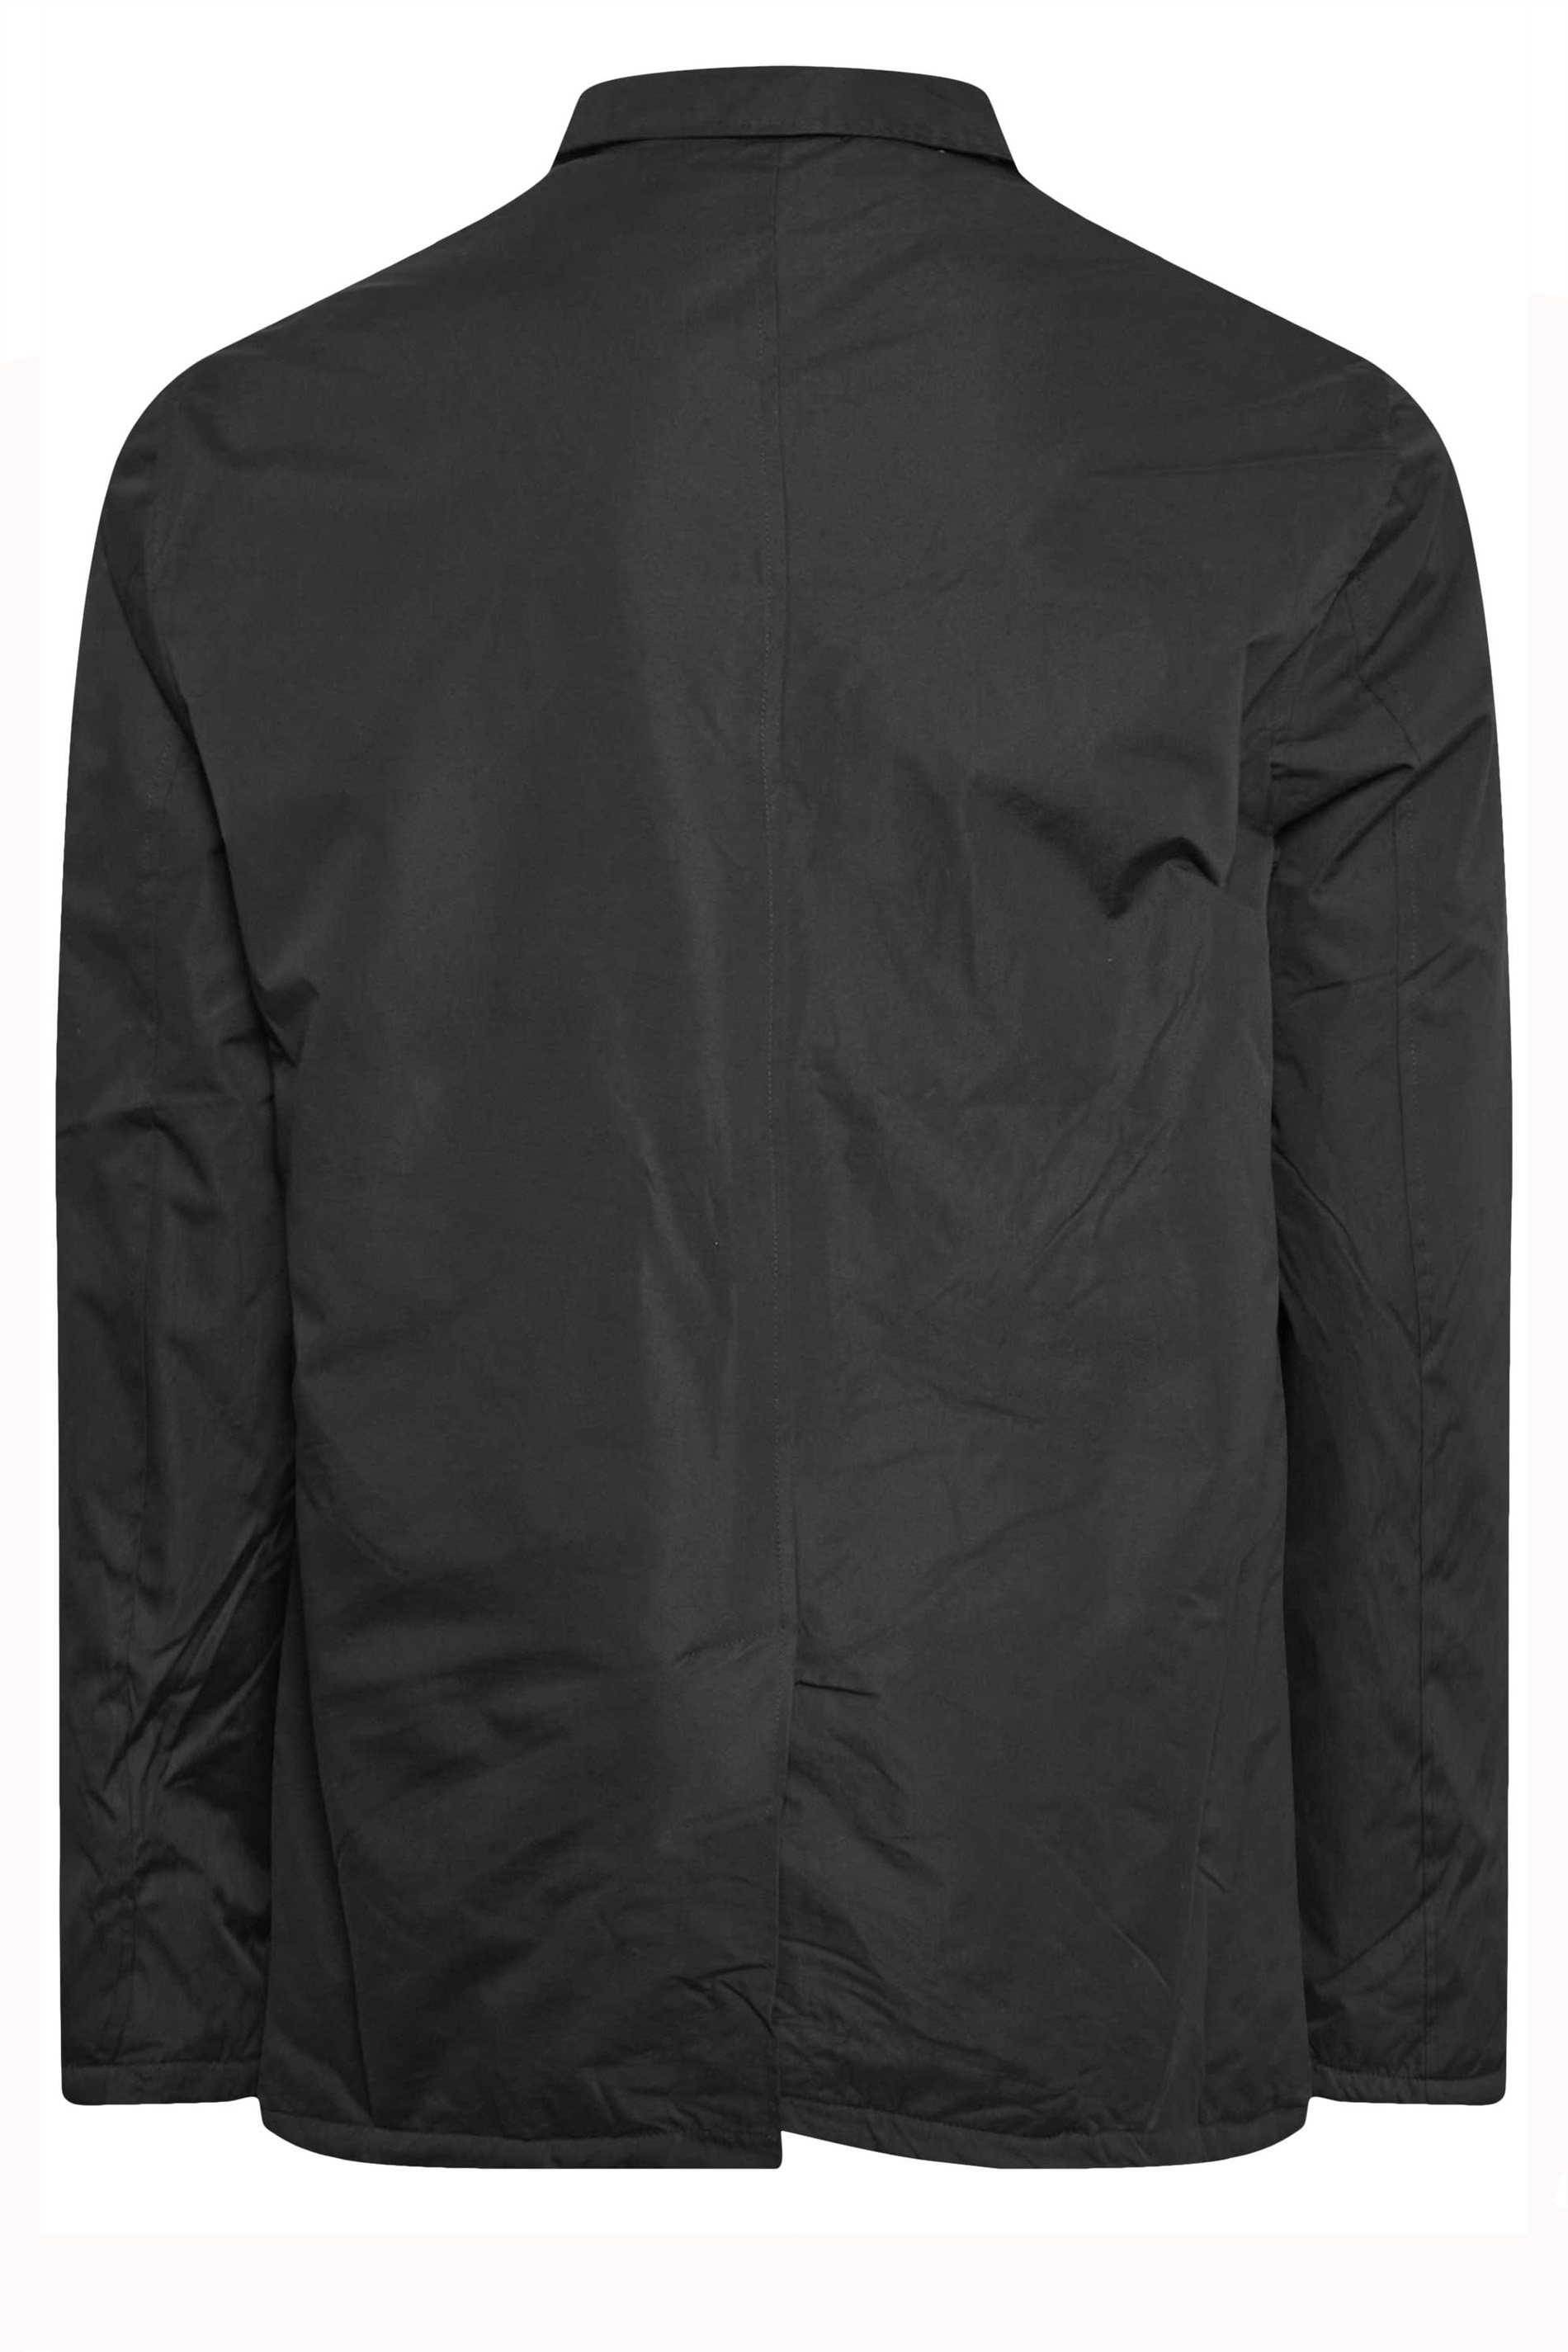 D555 Big & Tall Black Button Down Long Sleeve Shirt Jacket | BadRhino  2